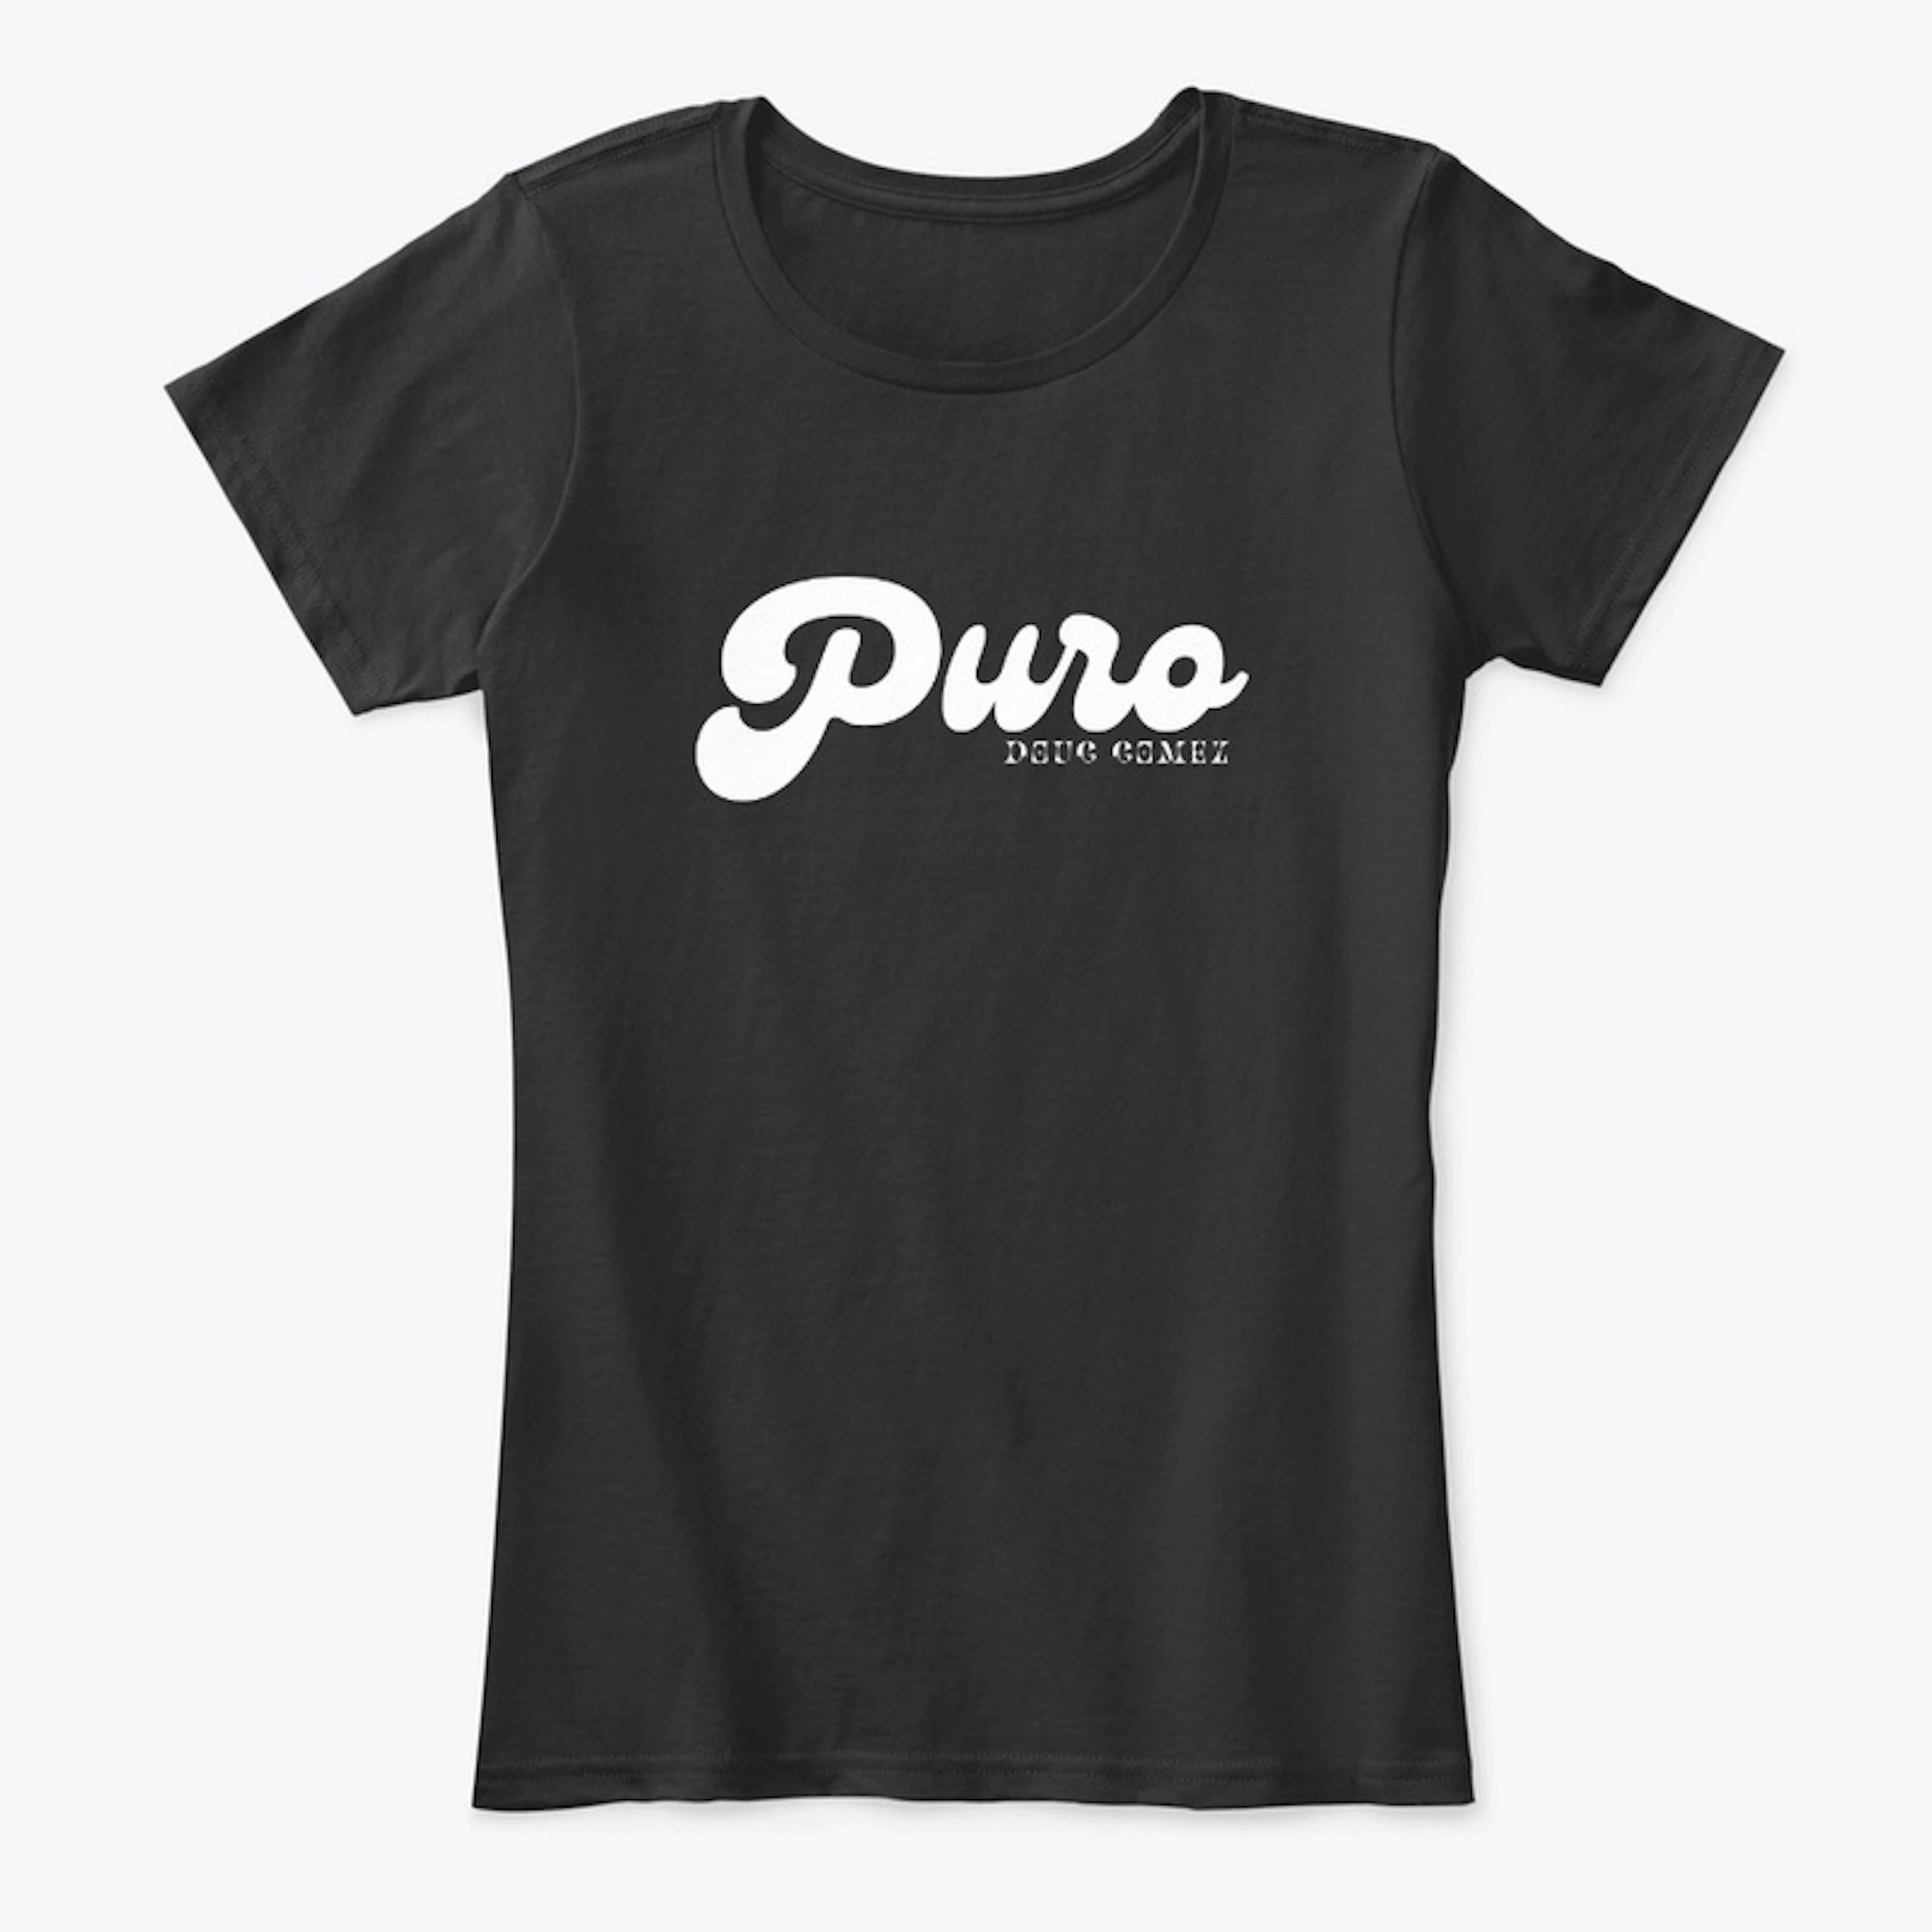 Doug Gomez - Puro Album Tshirt